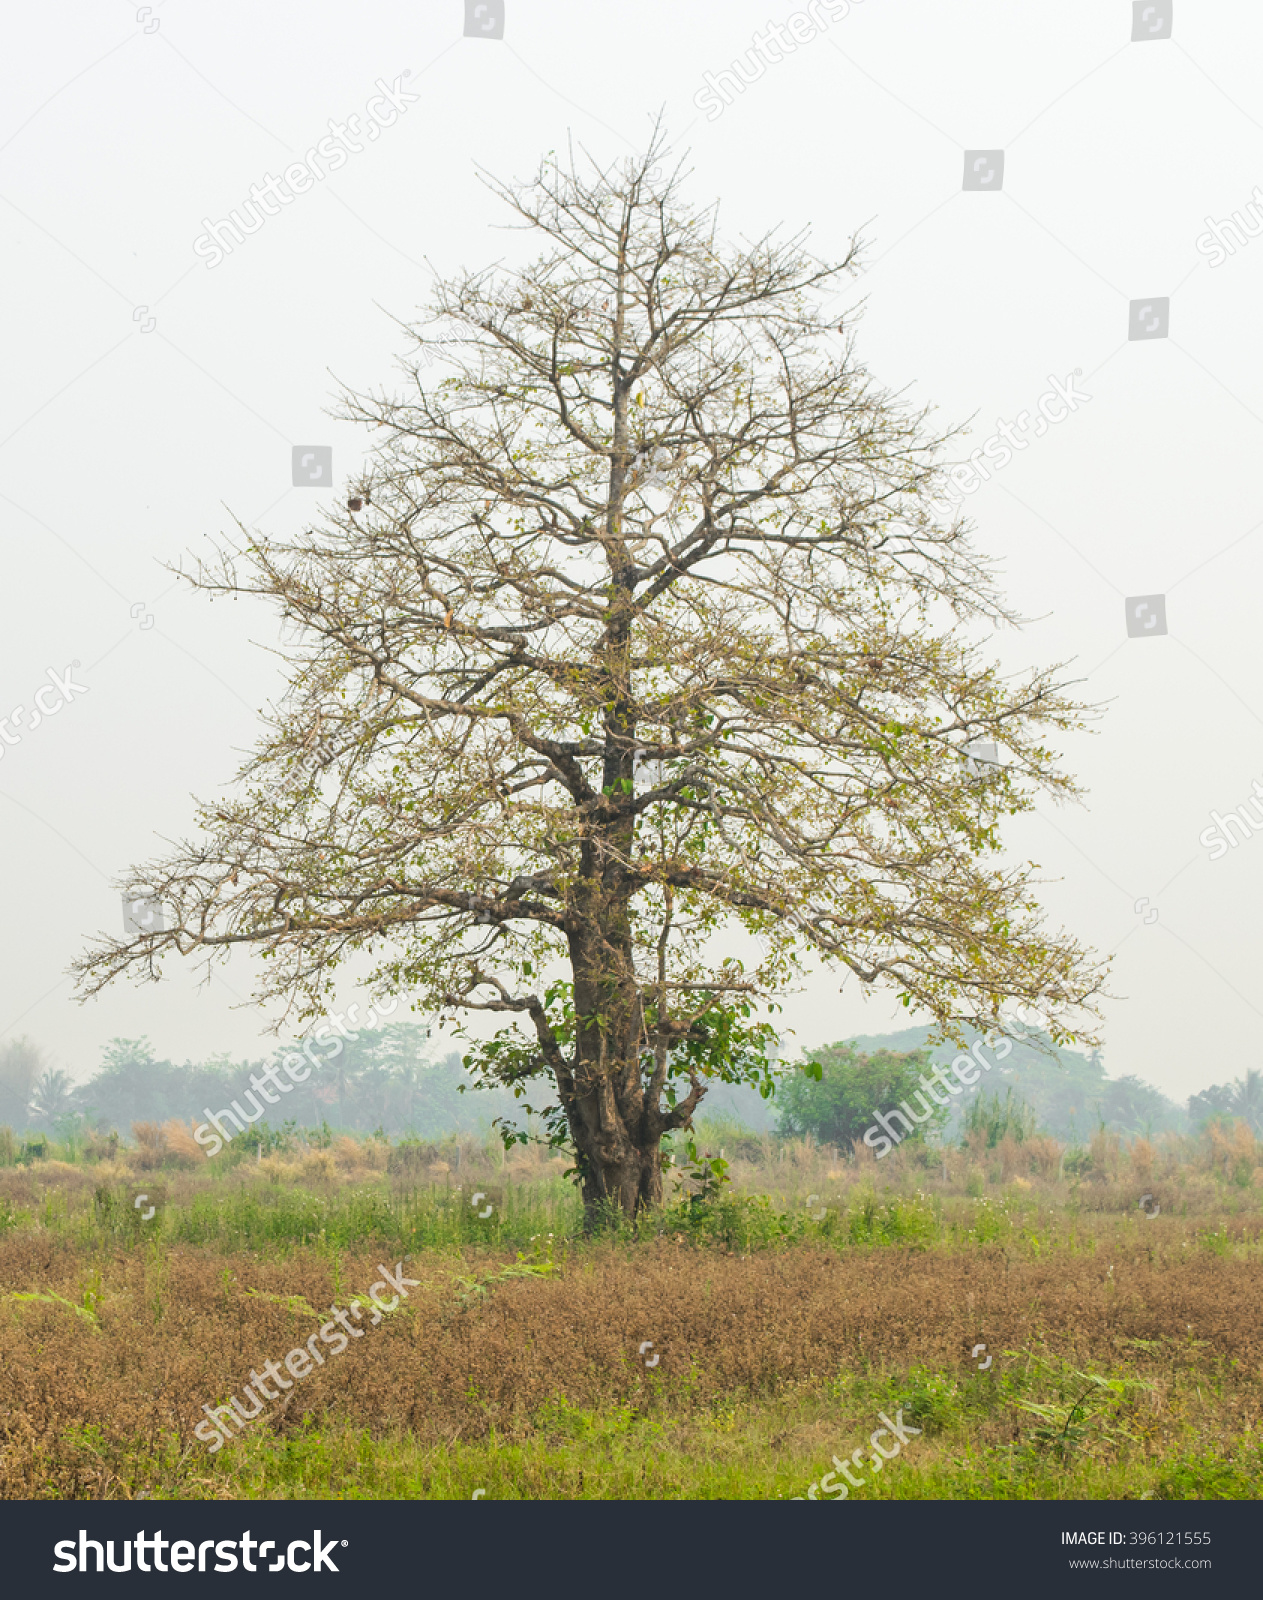 Tree Landscape Stockfoto 396121555 - Shutterstock